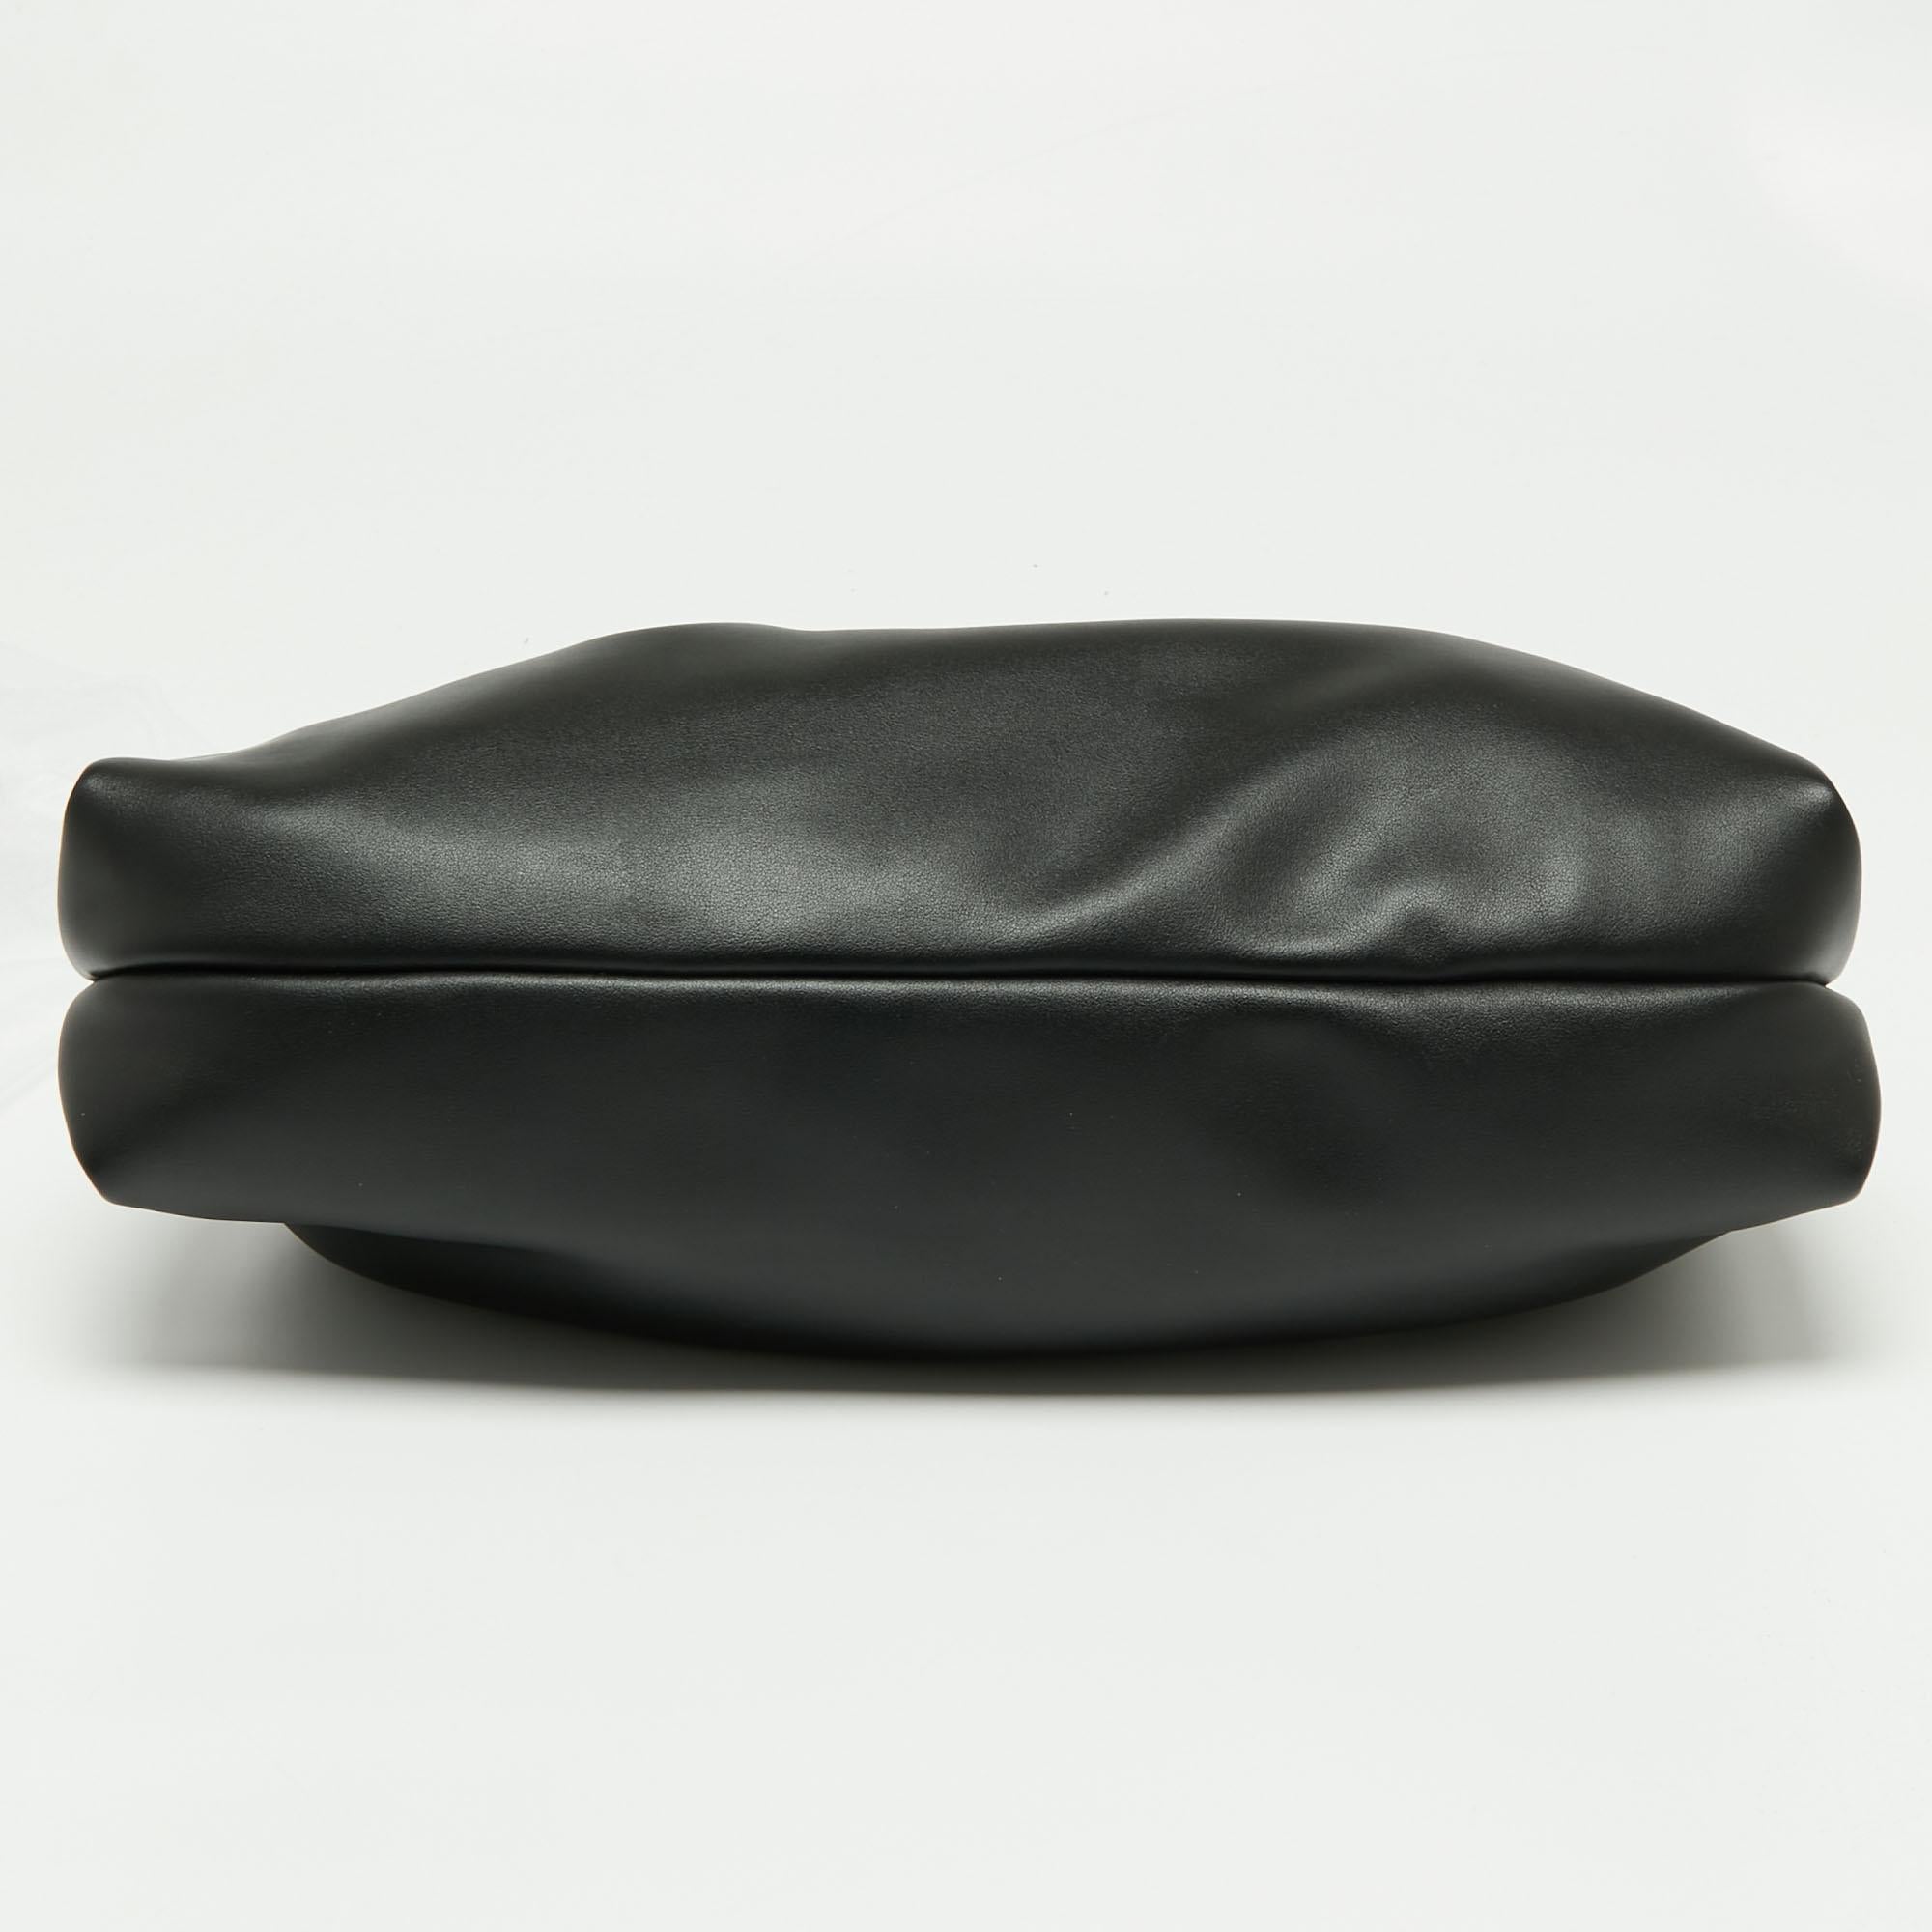 Michael Kors Black Faux Leather Extra-Large Nola Clutch Bag 1